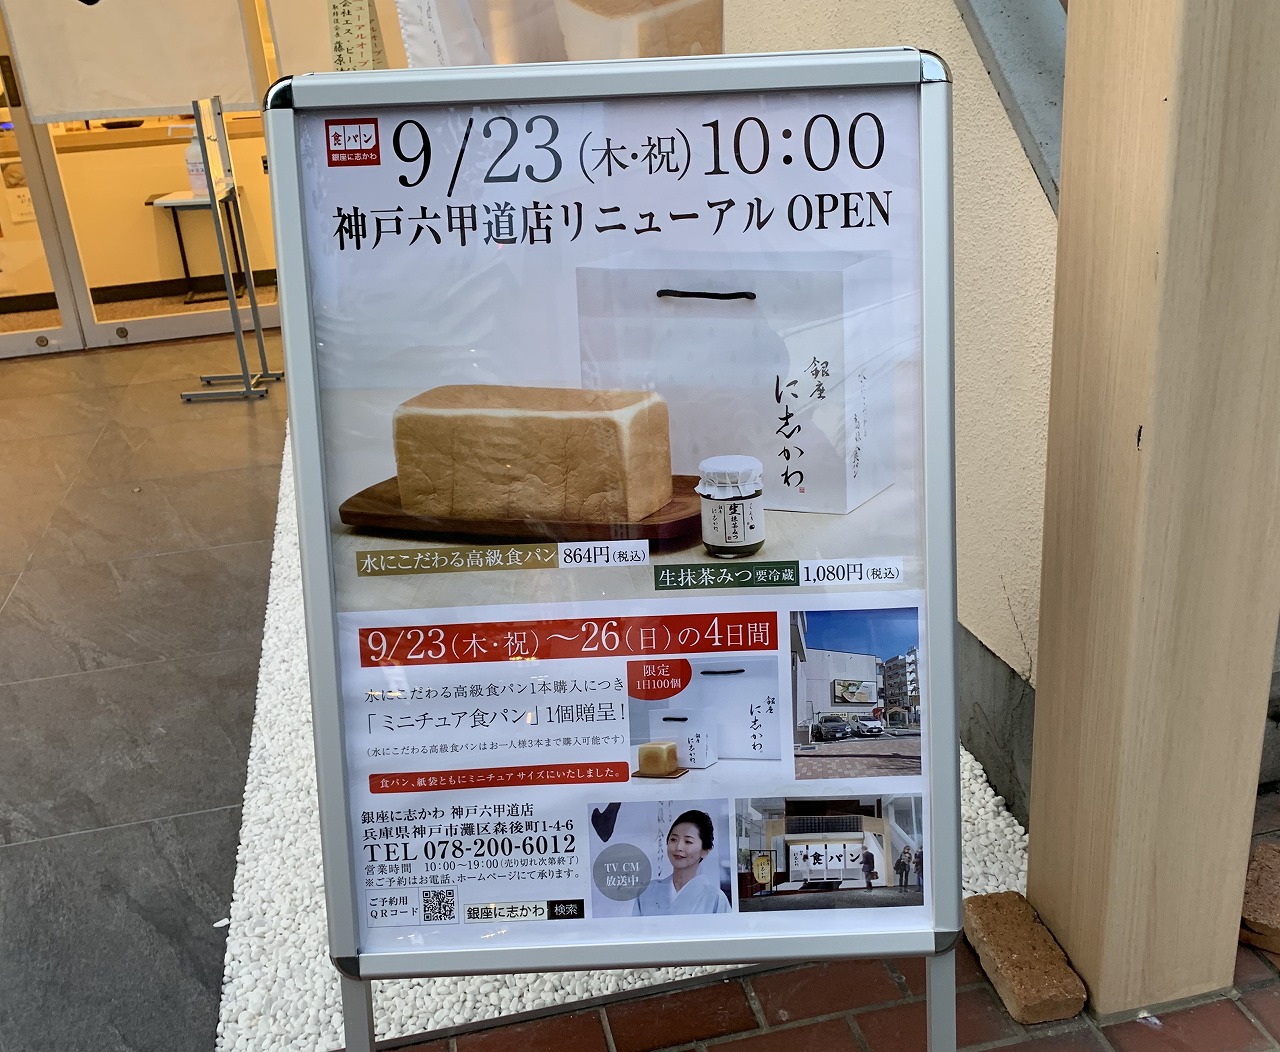 食パン専門店「銀座に志かわ神戸六甲道店」